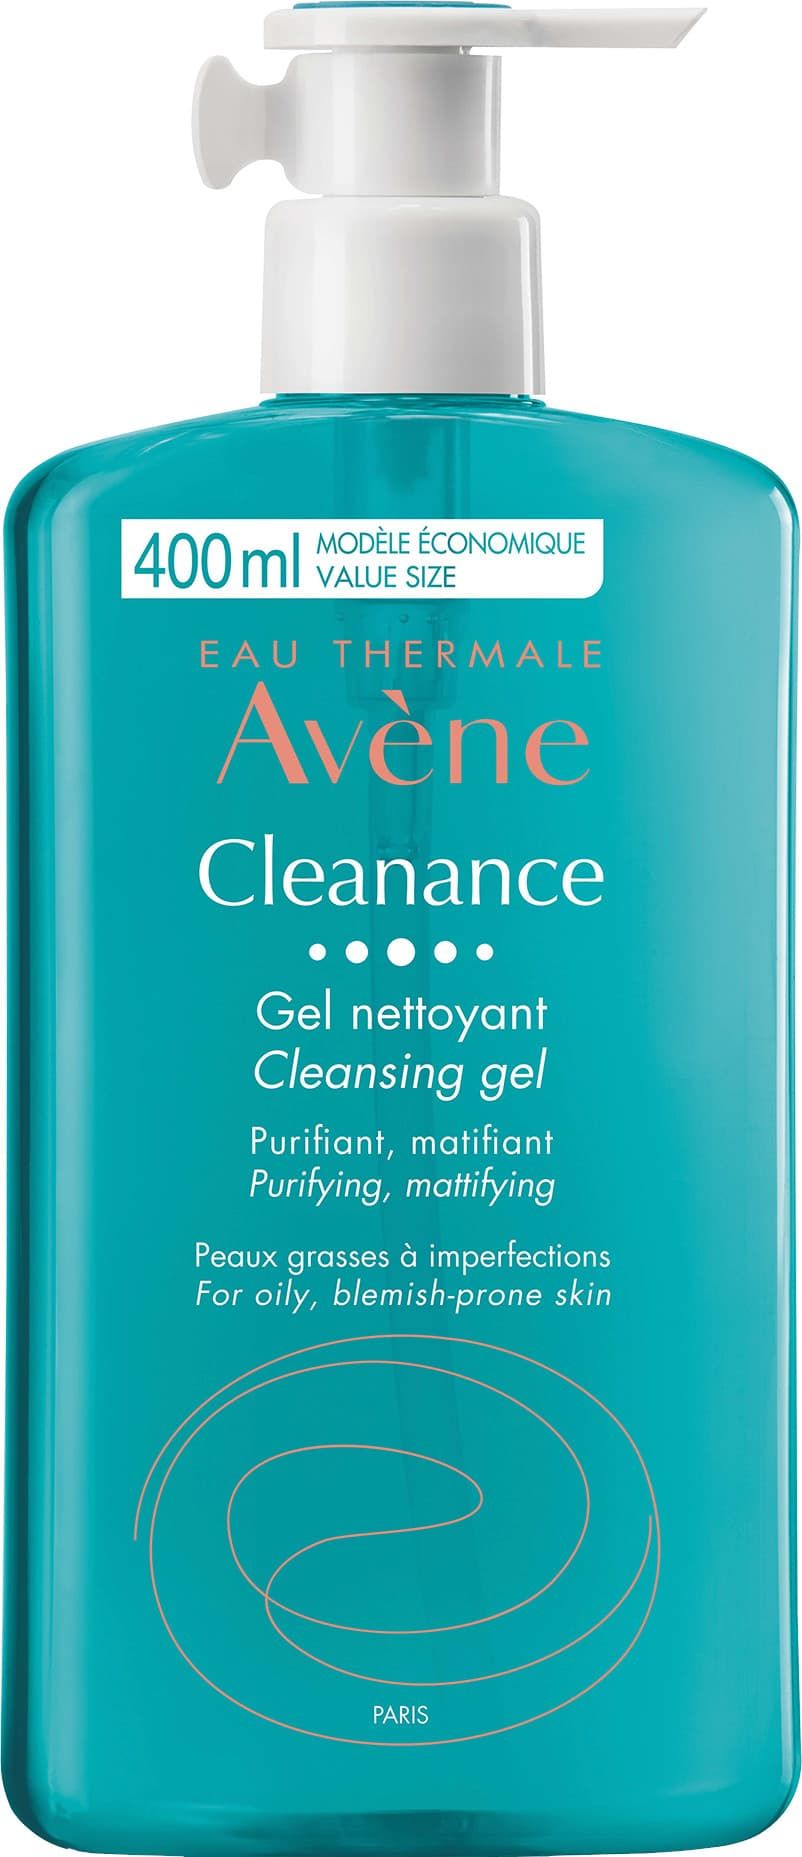 Avène Cleanance Čisticí gel pro citlivou pleť se sklonem k akné 400 ml